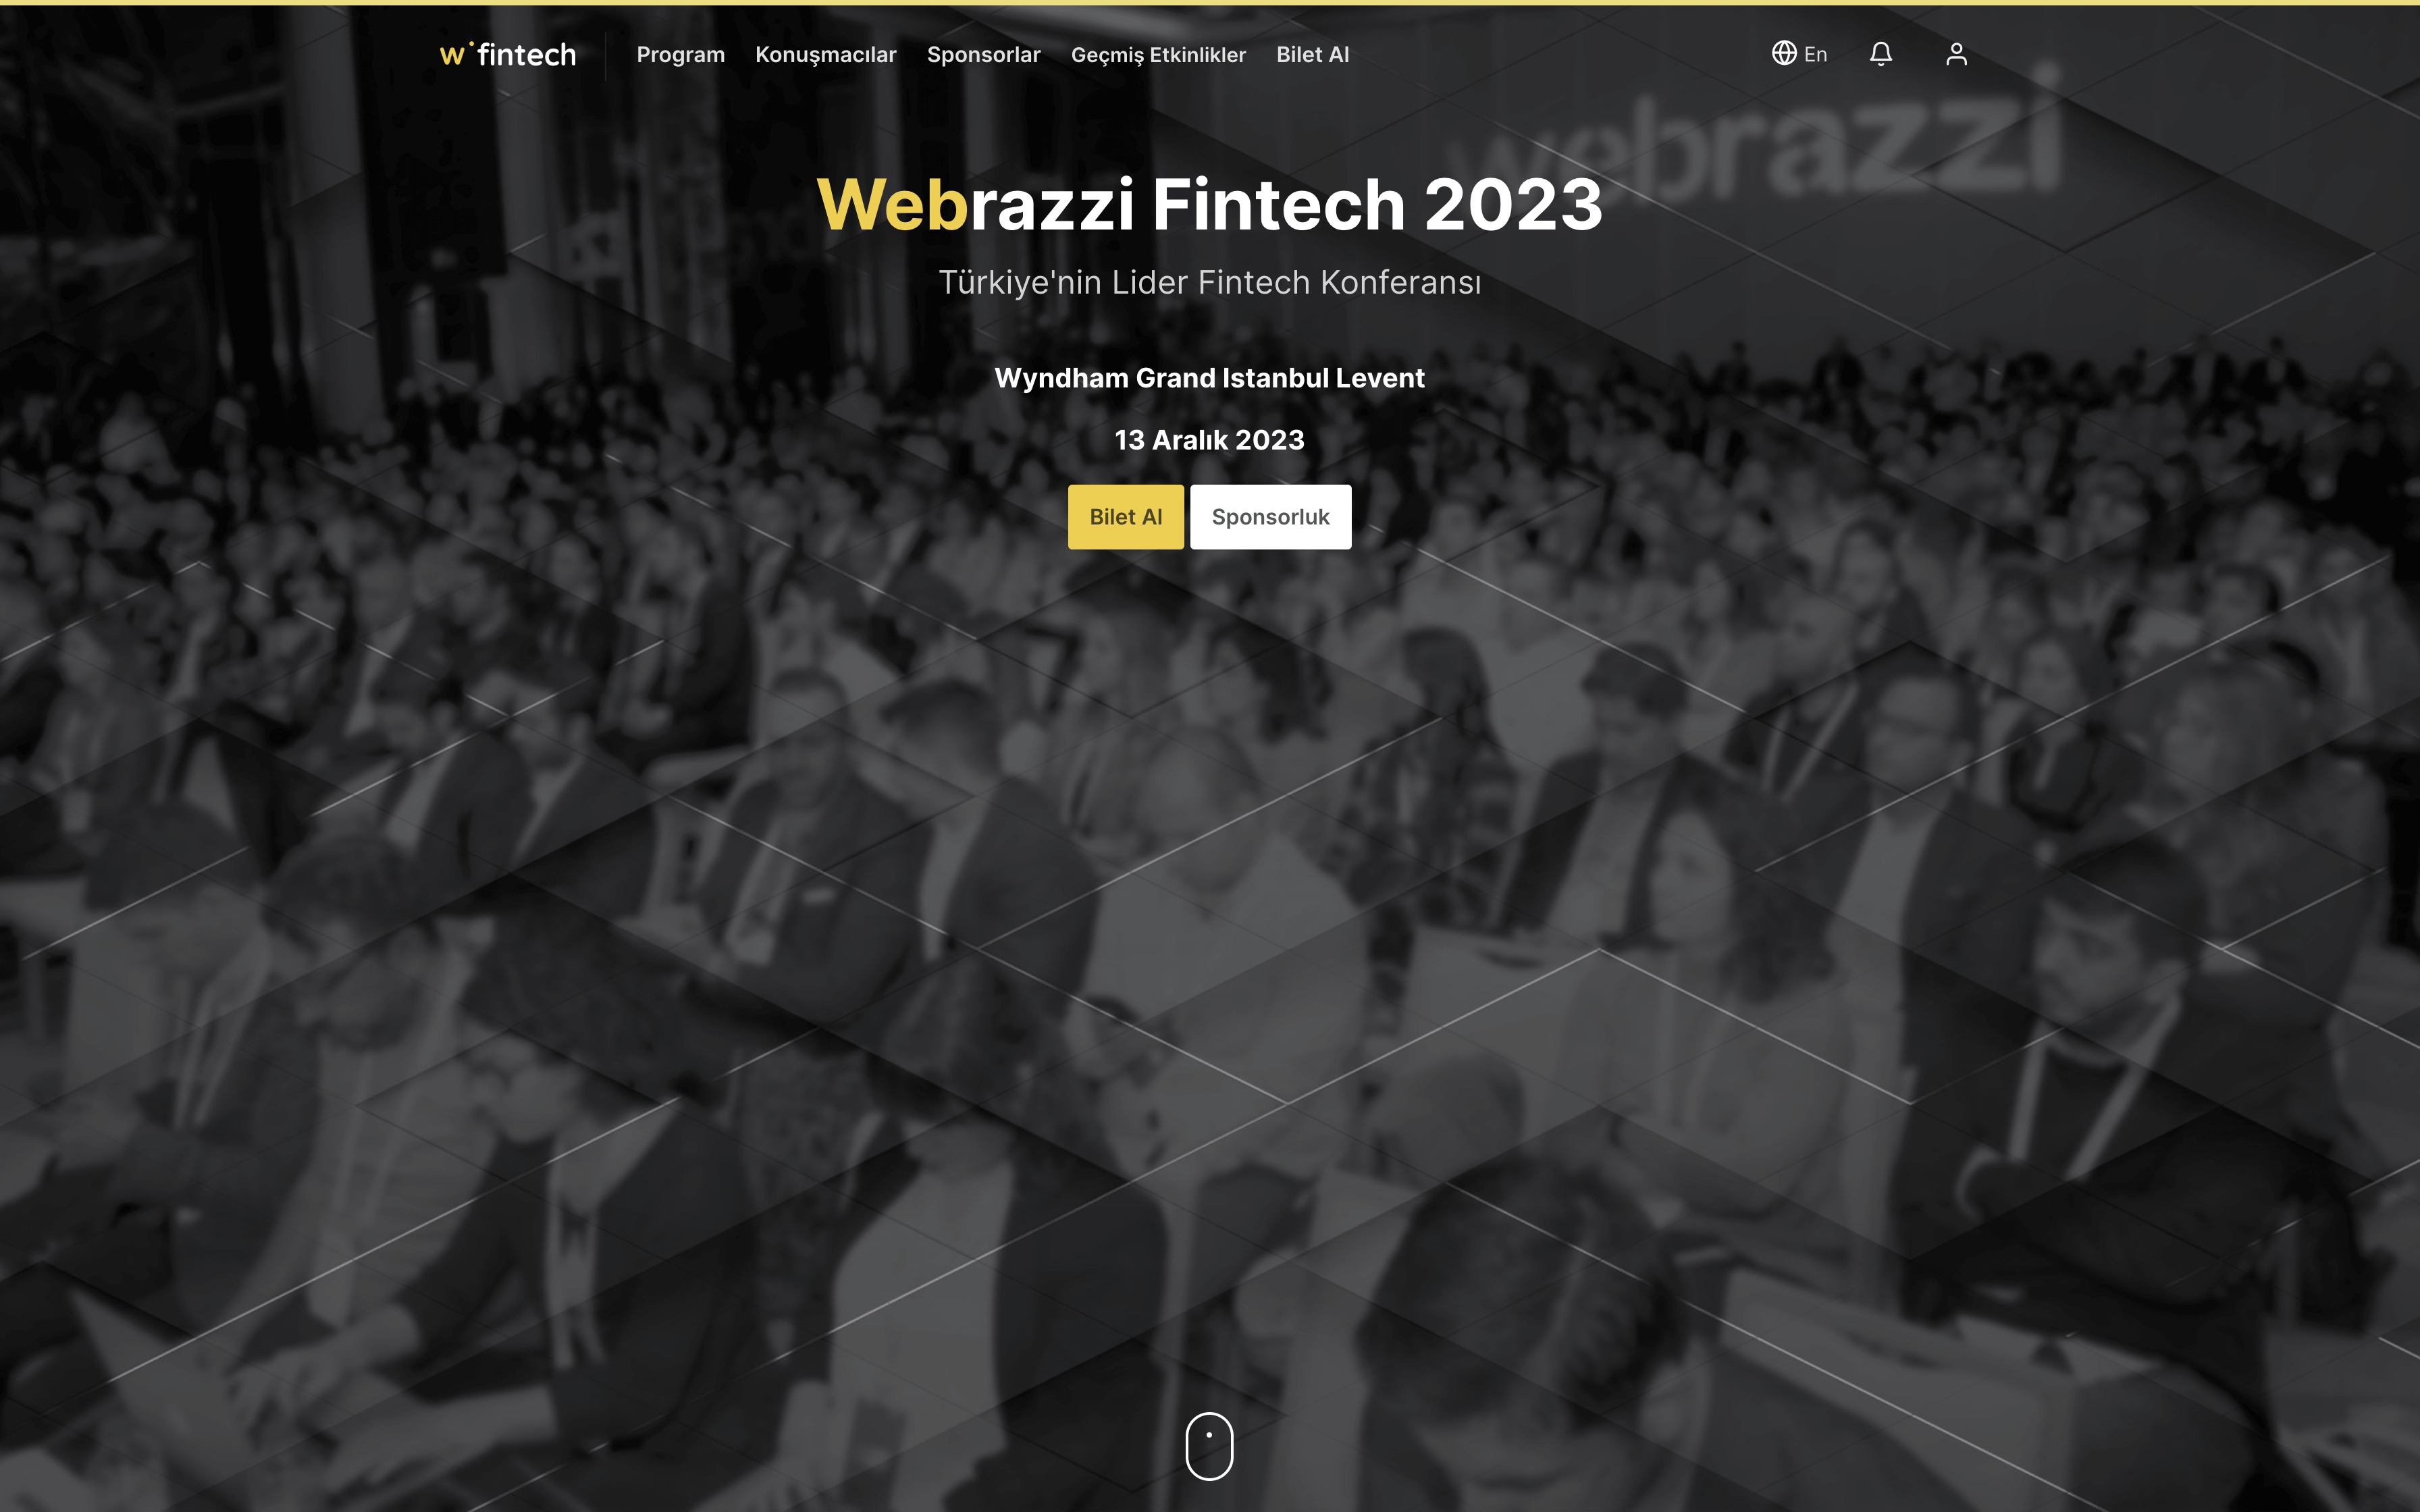 Webrazzi Fintech 2023